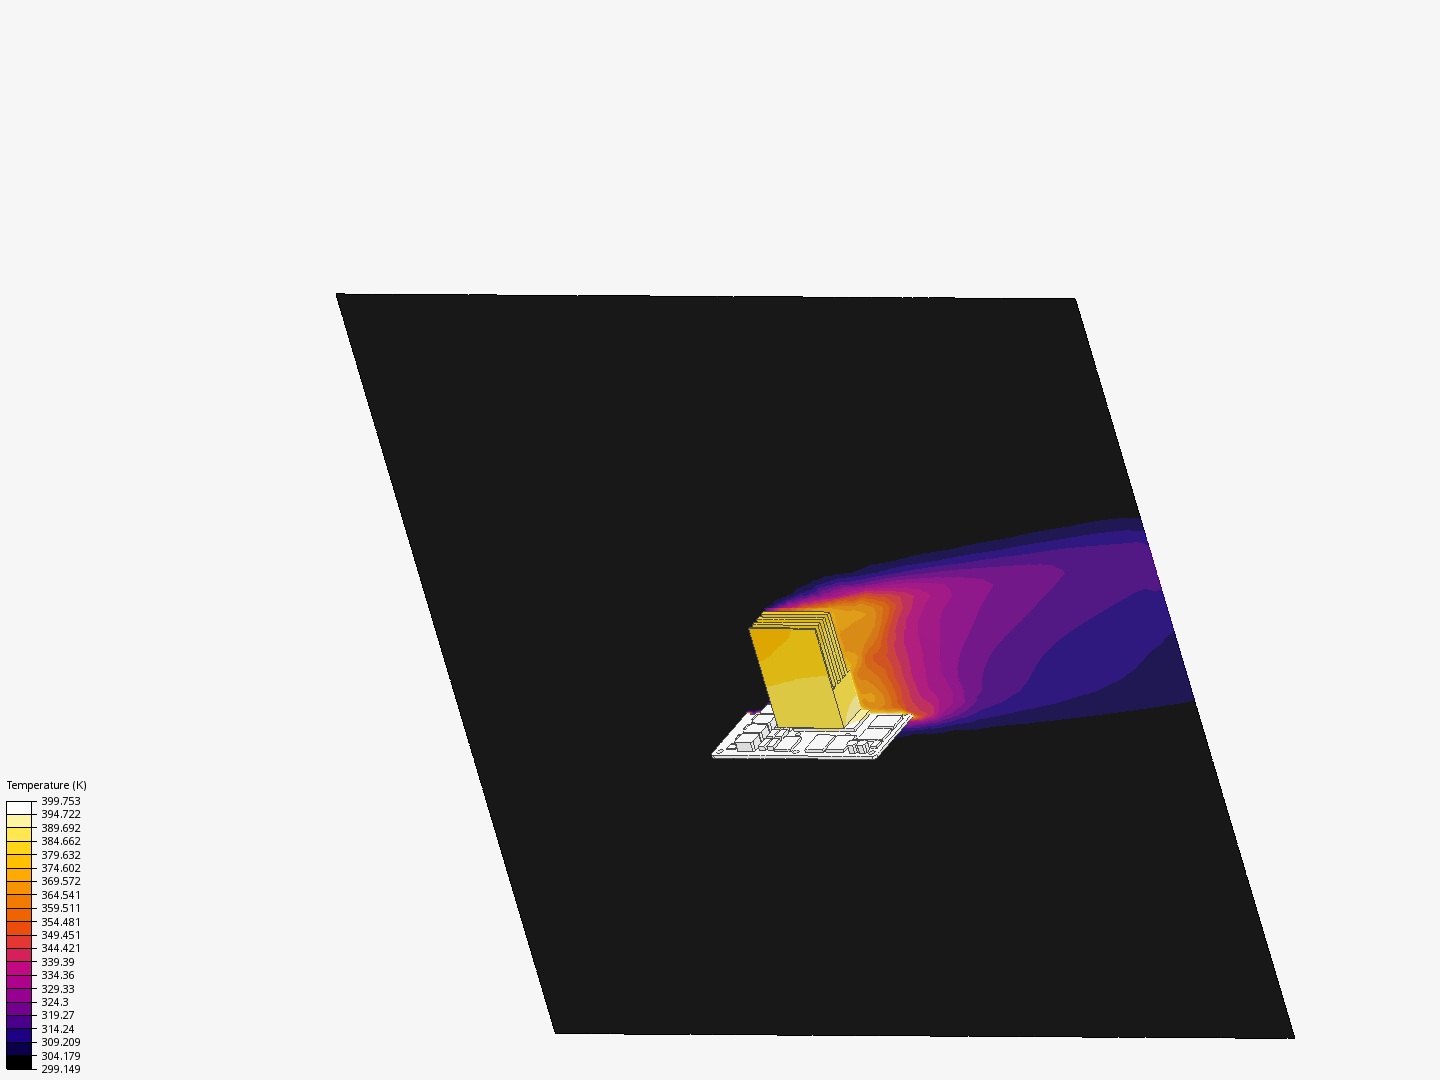 Thermal simulation assginment image